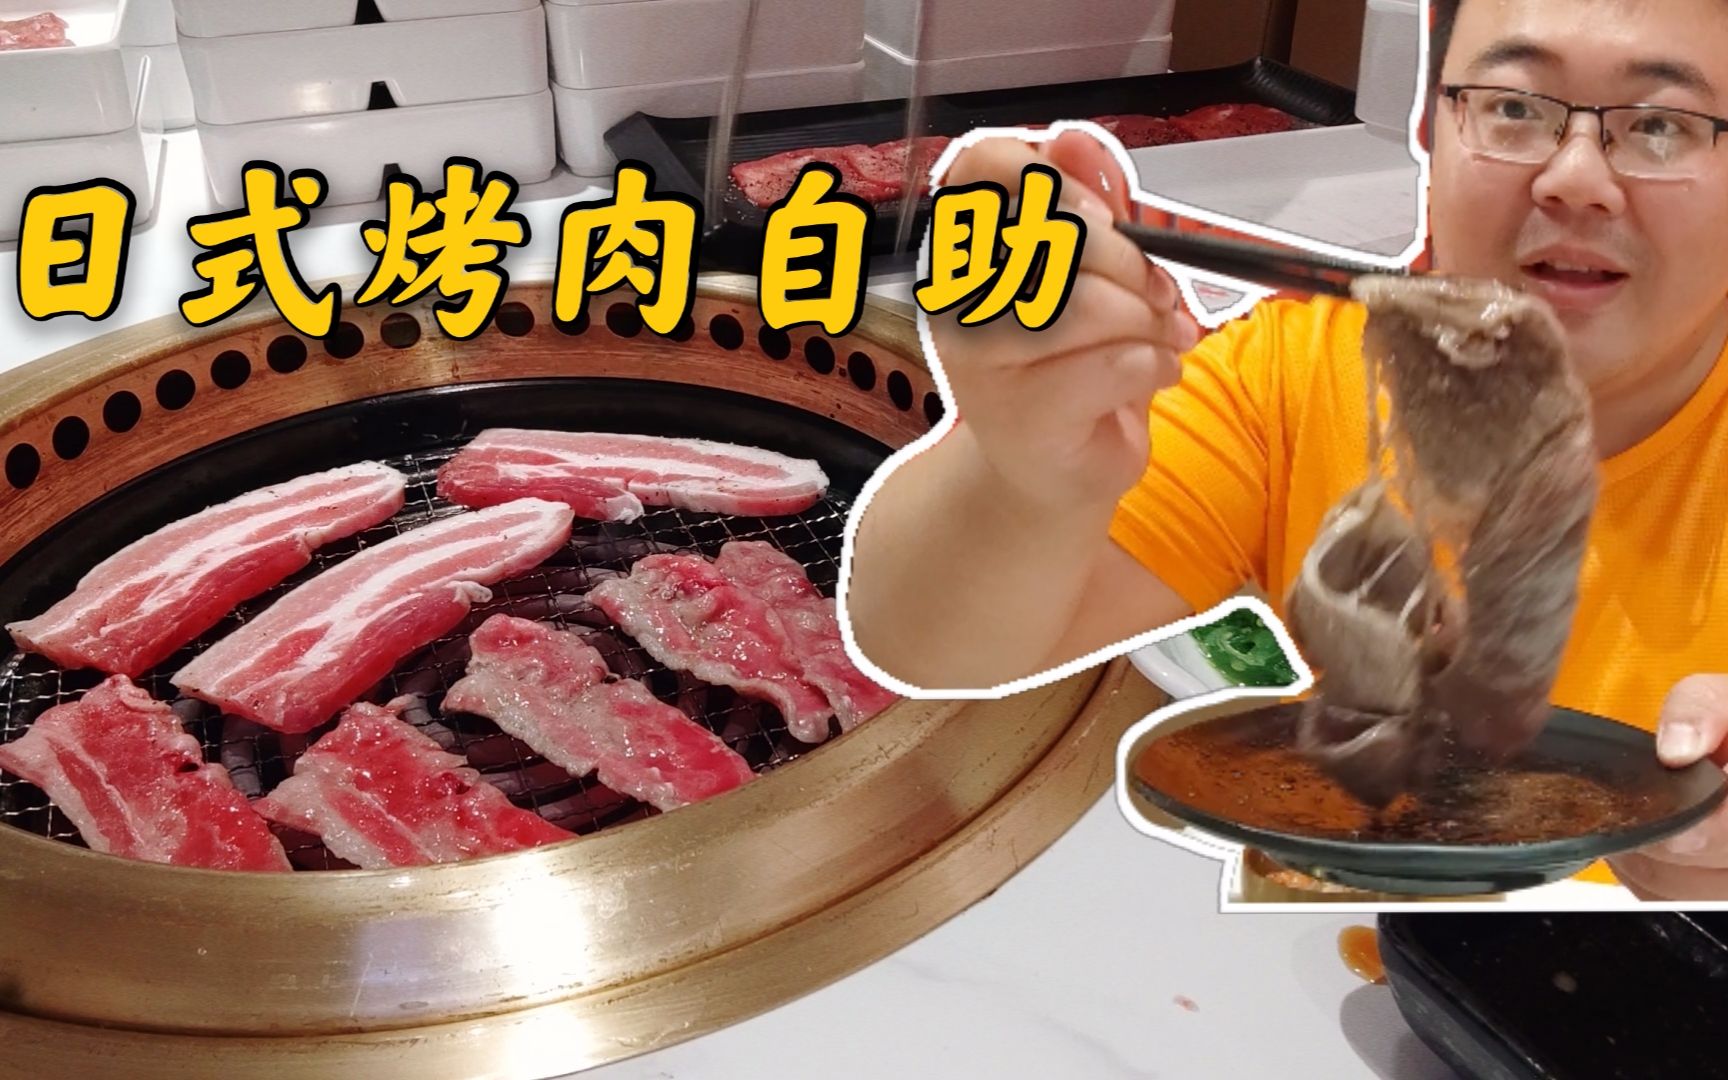 日式烤肉自助新店开业，大口吃肉太过瘾了！冷面和滑蛋牛肉饭也超好吃！【神户赤童日式烤肉】